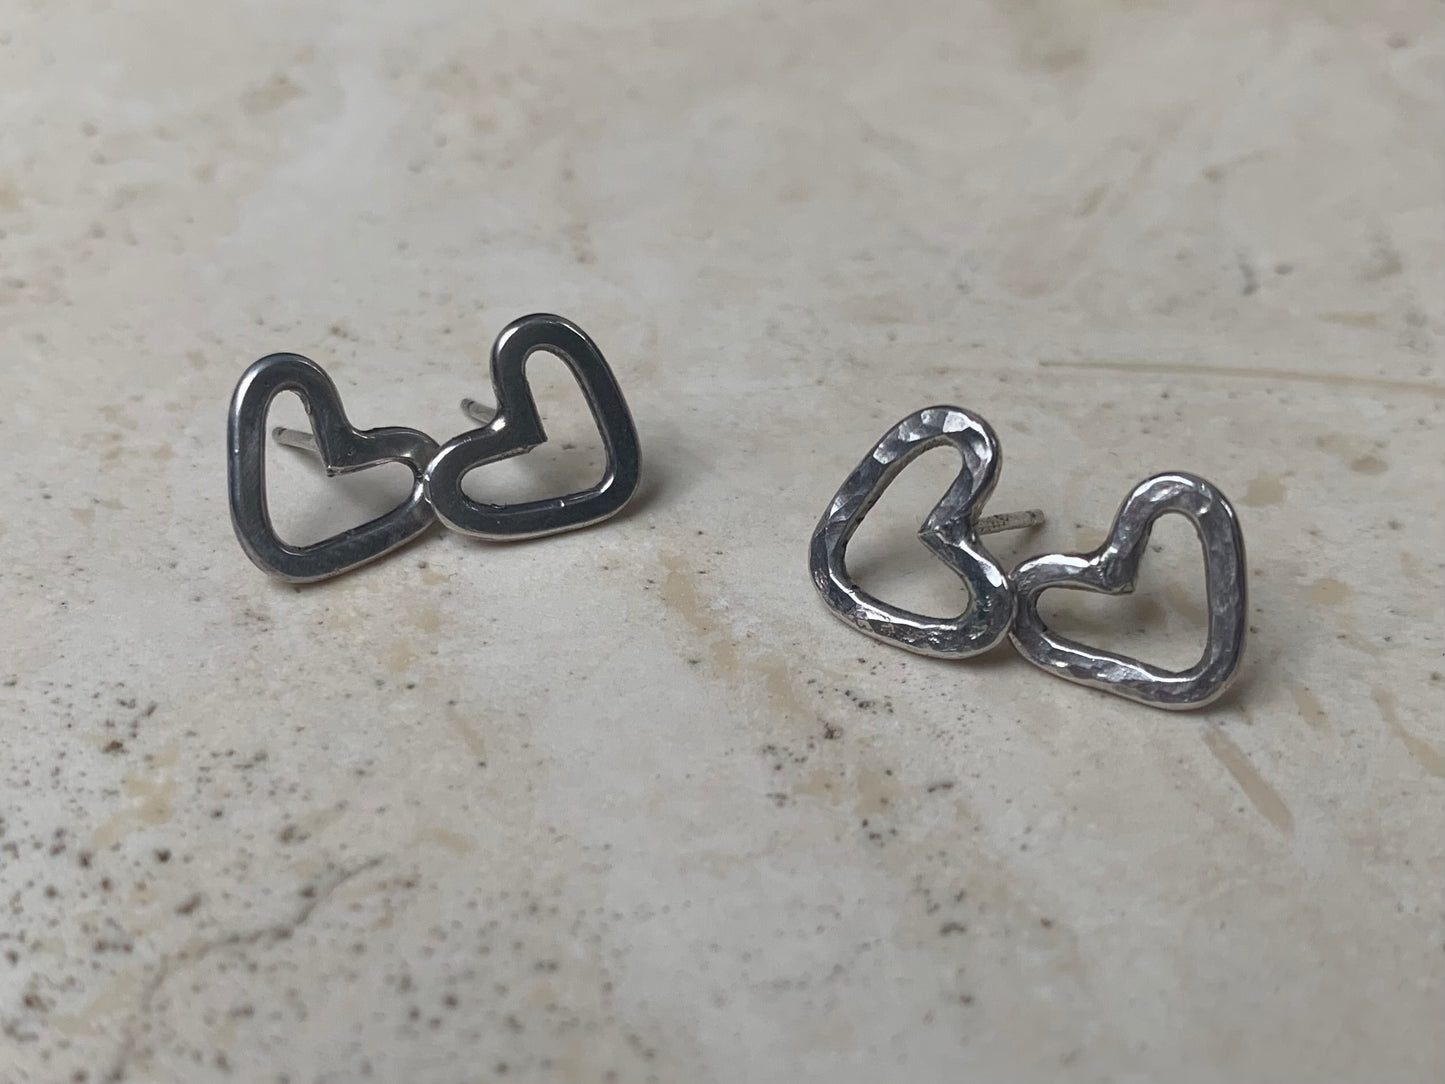 Sterling silver heart stud earrings